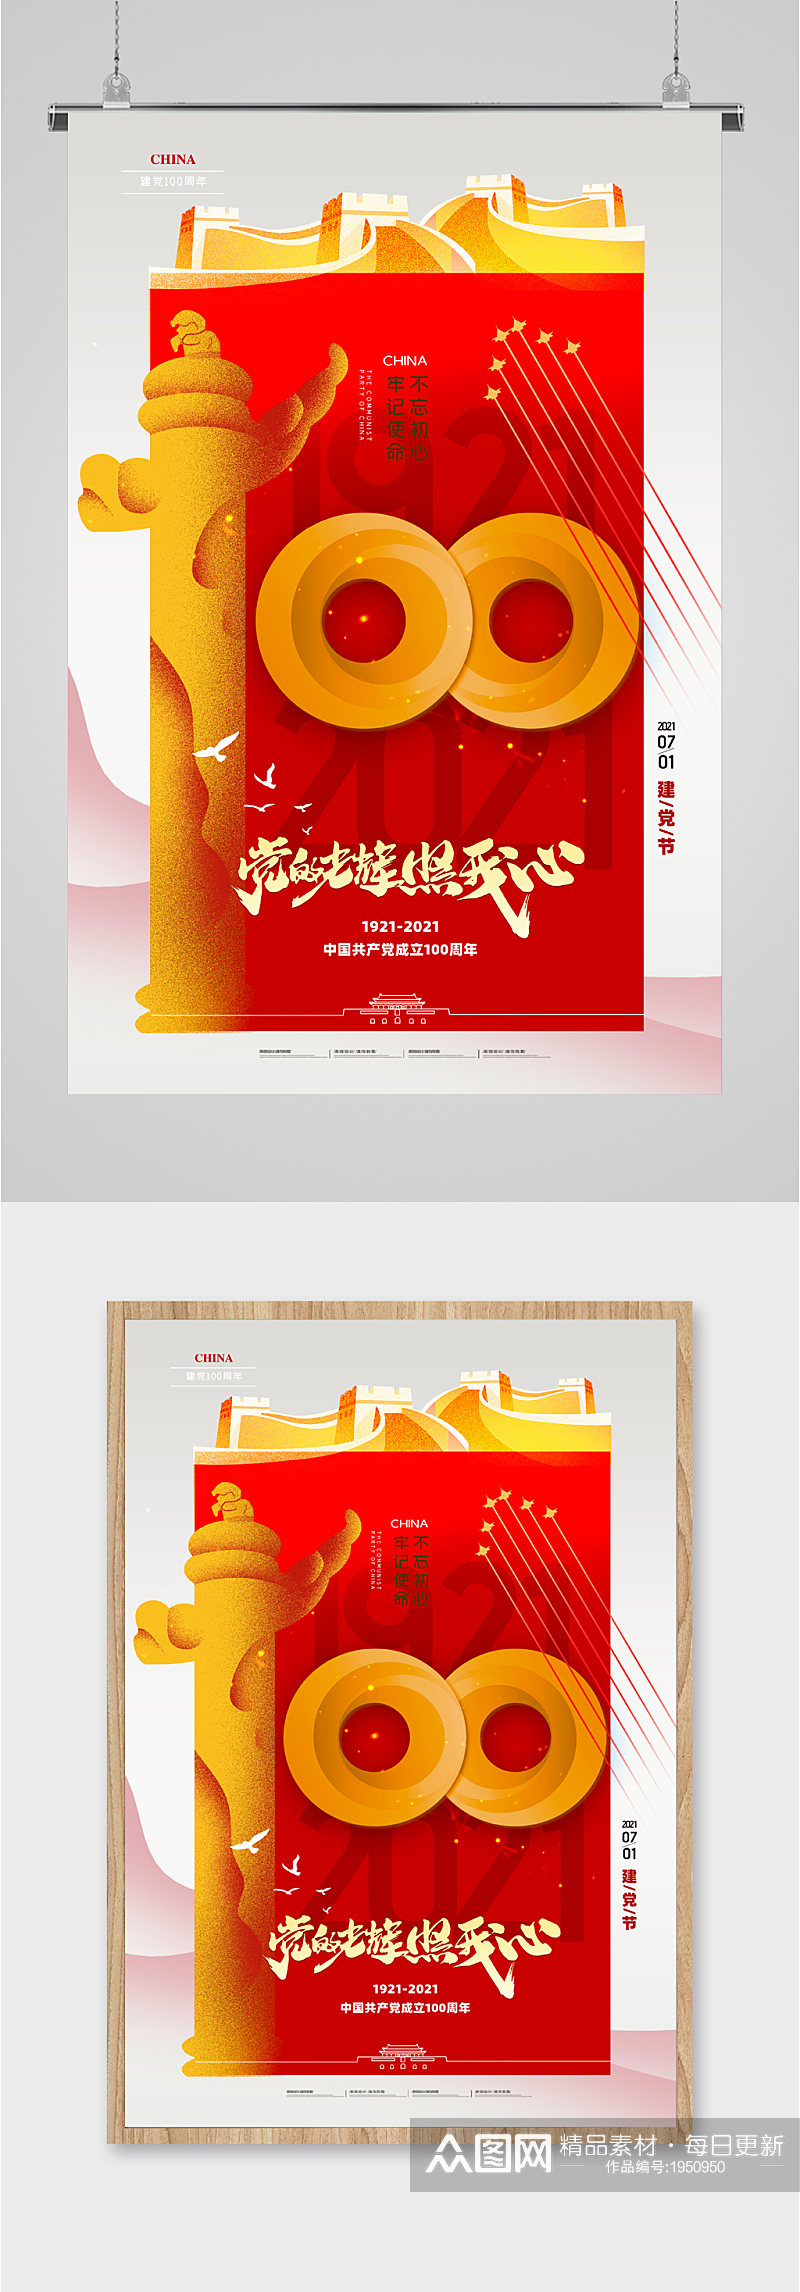 建党节庆祝共产党成立100周年海报素材